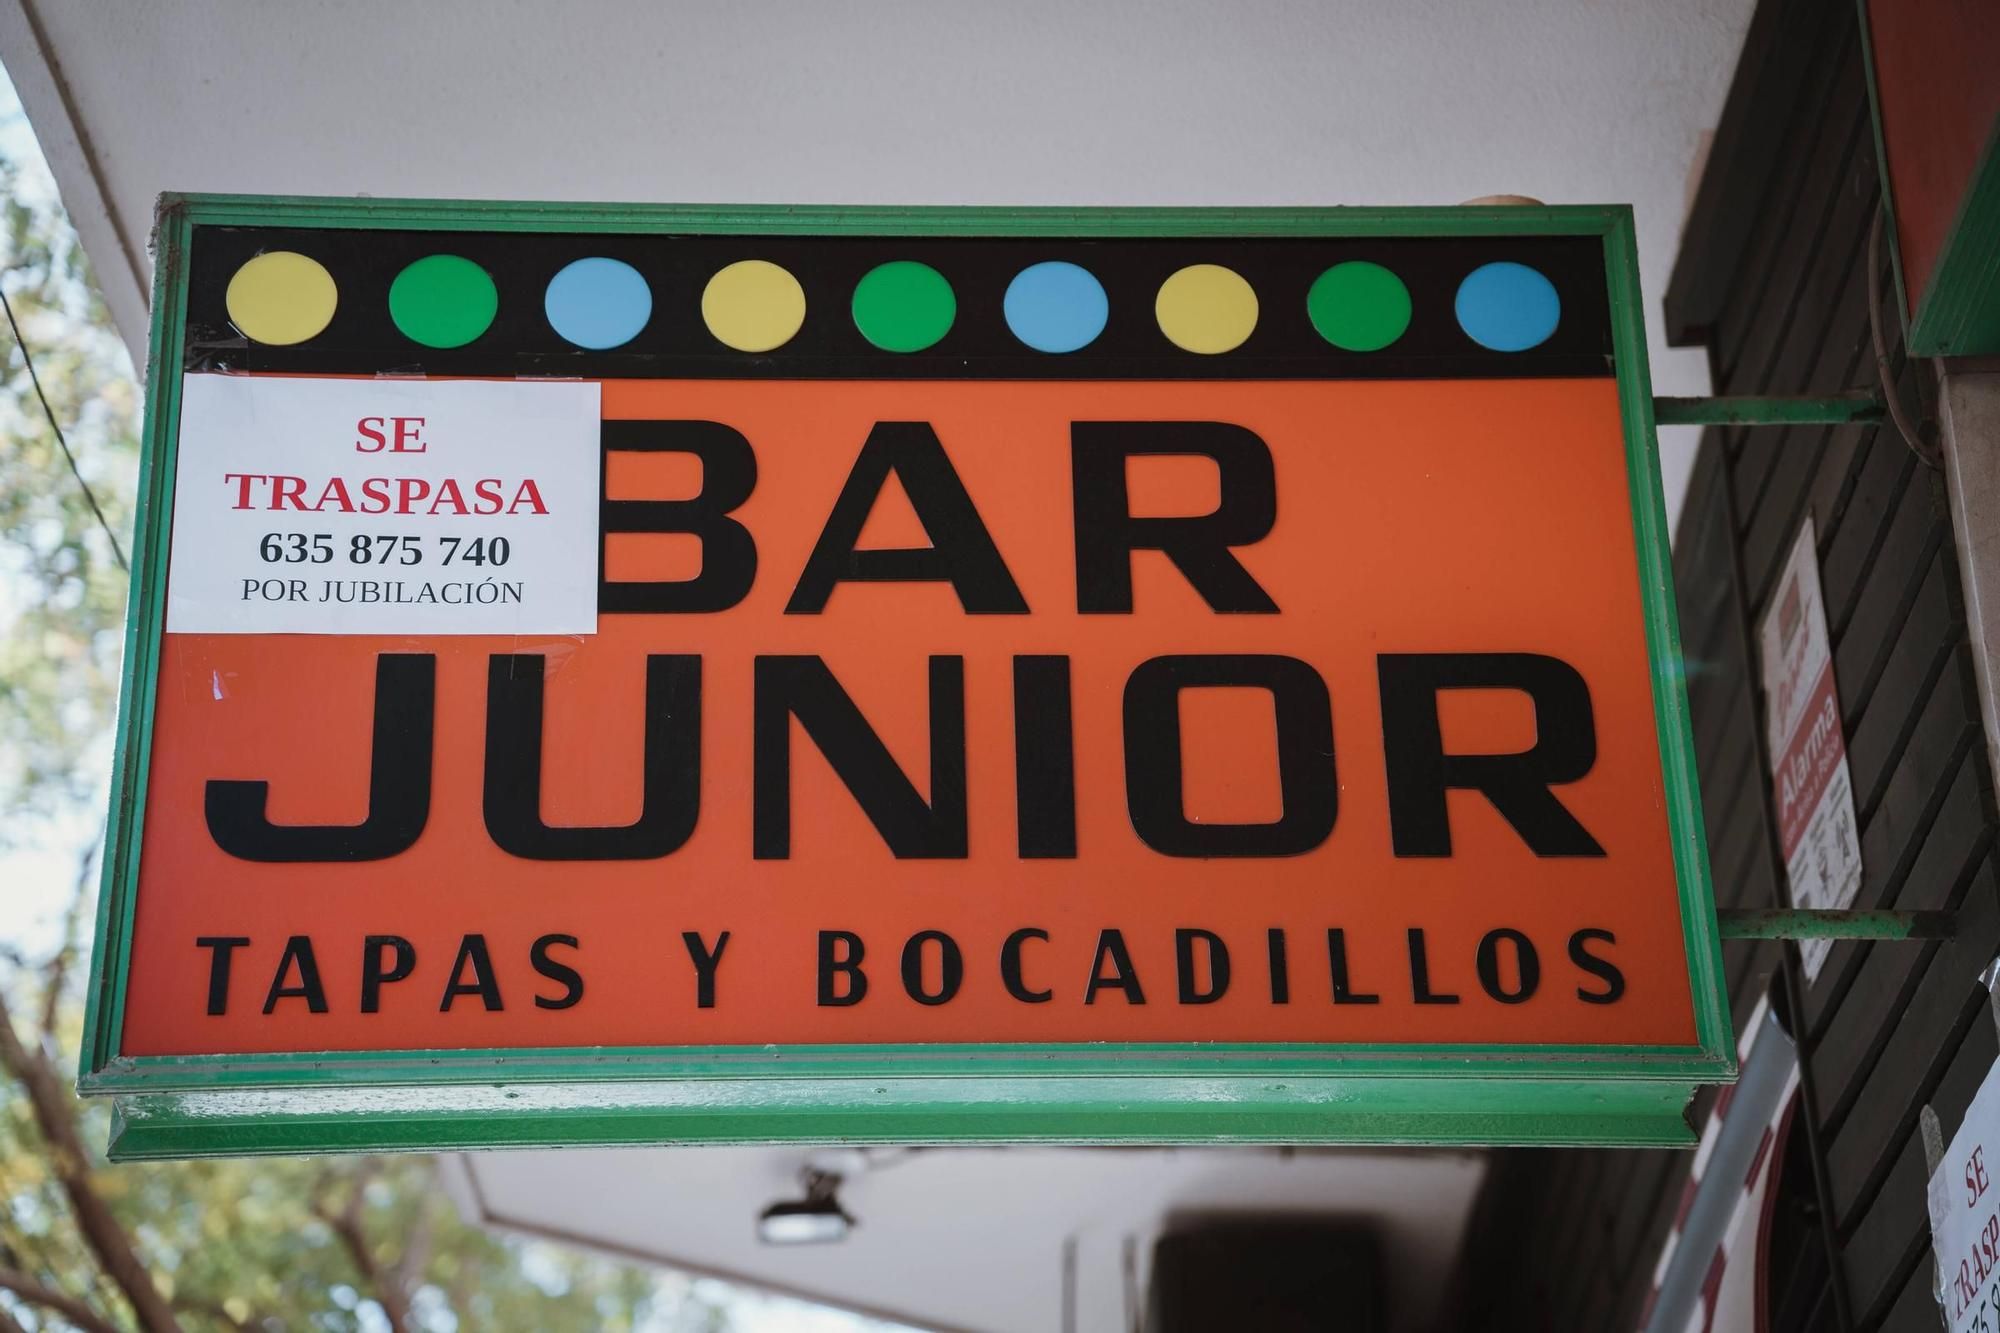 Eine der Letzten ihrer Art: Traditionsbar "Junior" auf Mallorca